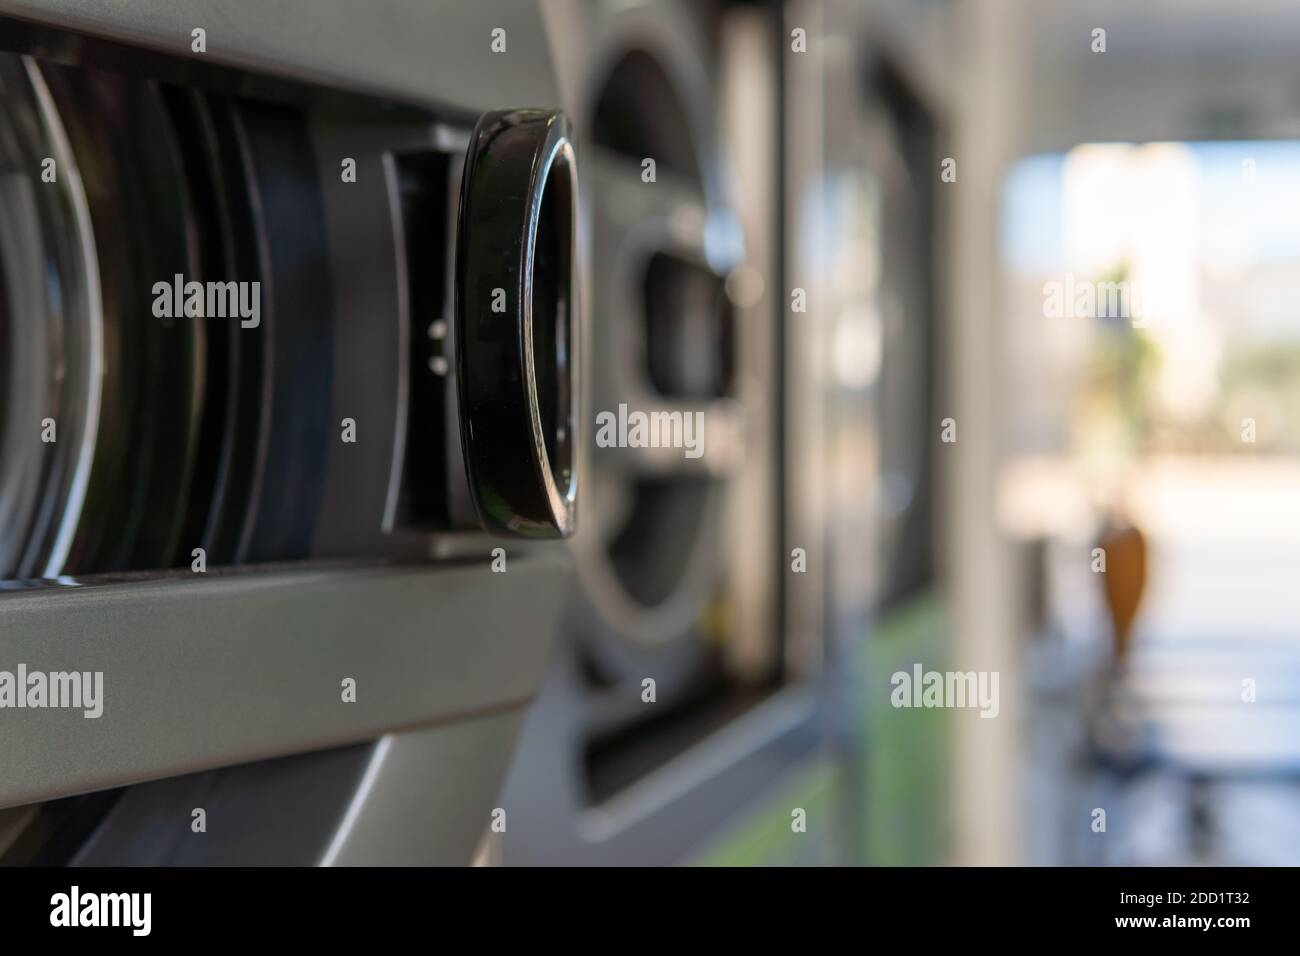 Particolare di una lavatrice industriale in primo piano, all'interno di una lavanderia con effetto bokeh Foto Stock